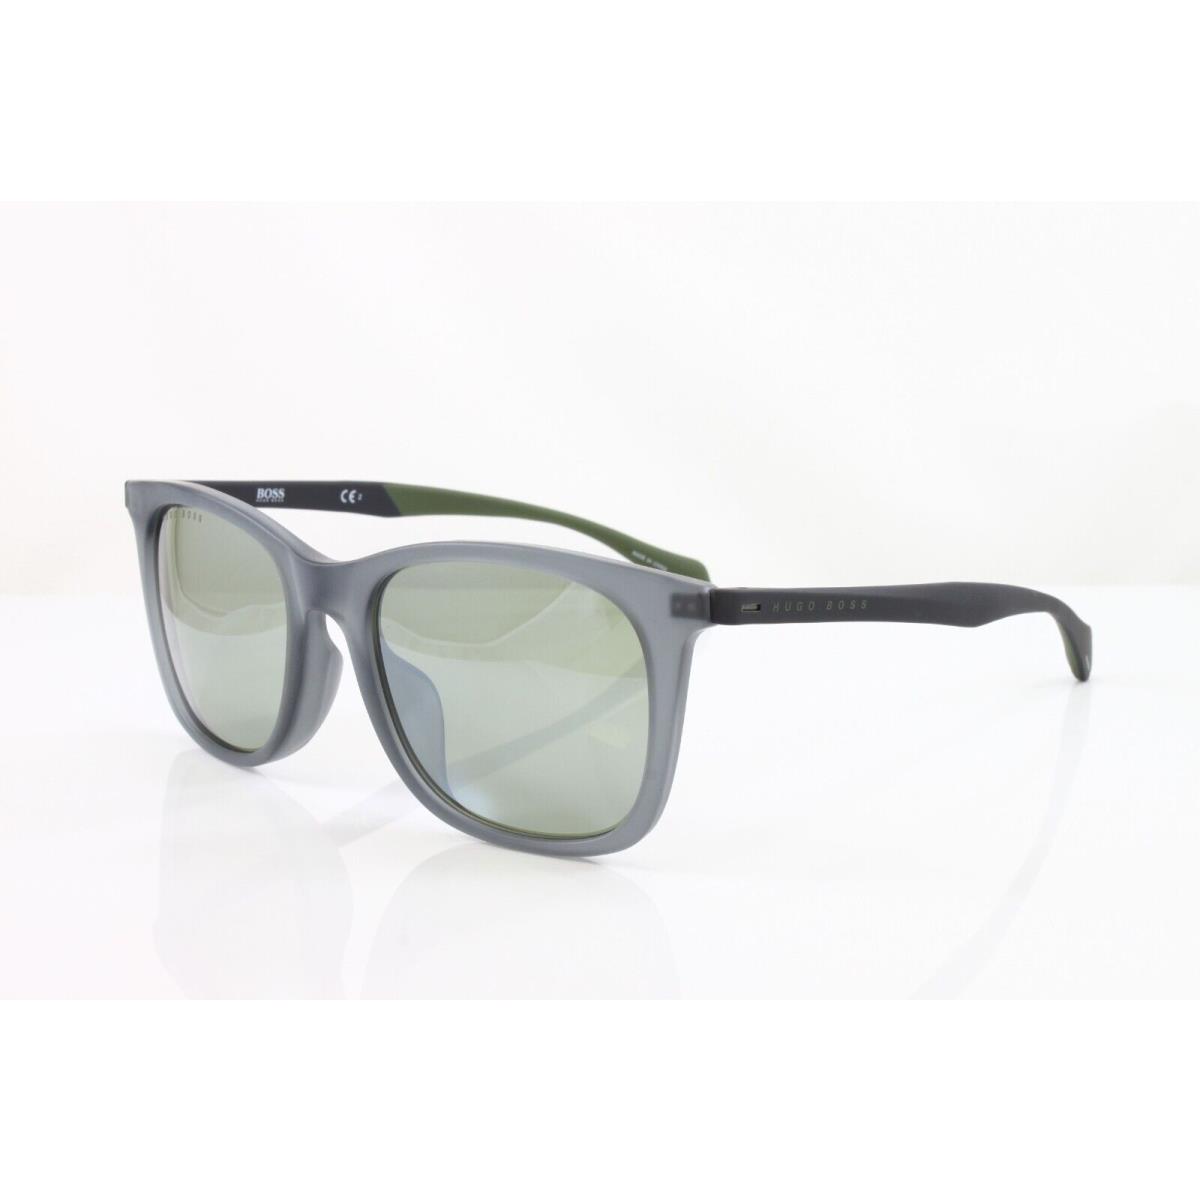 Hugo Boss sunglasses  - Blue Frame, Green Lens